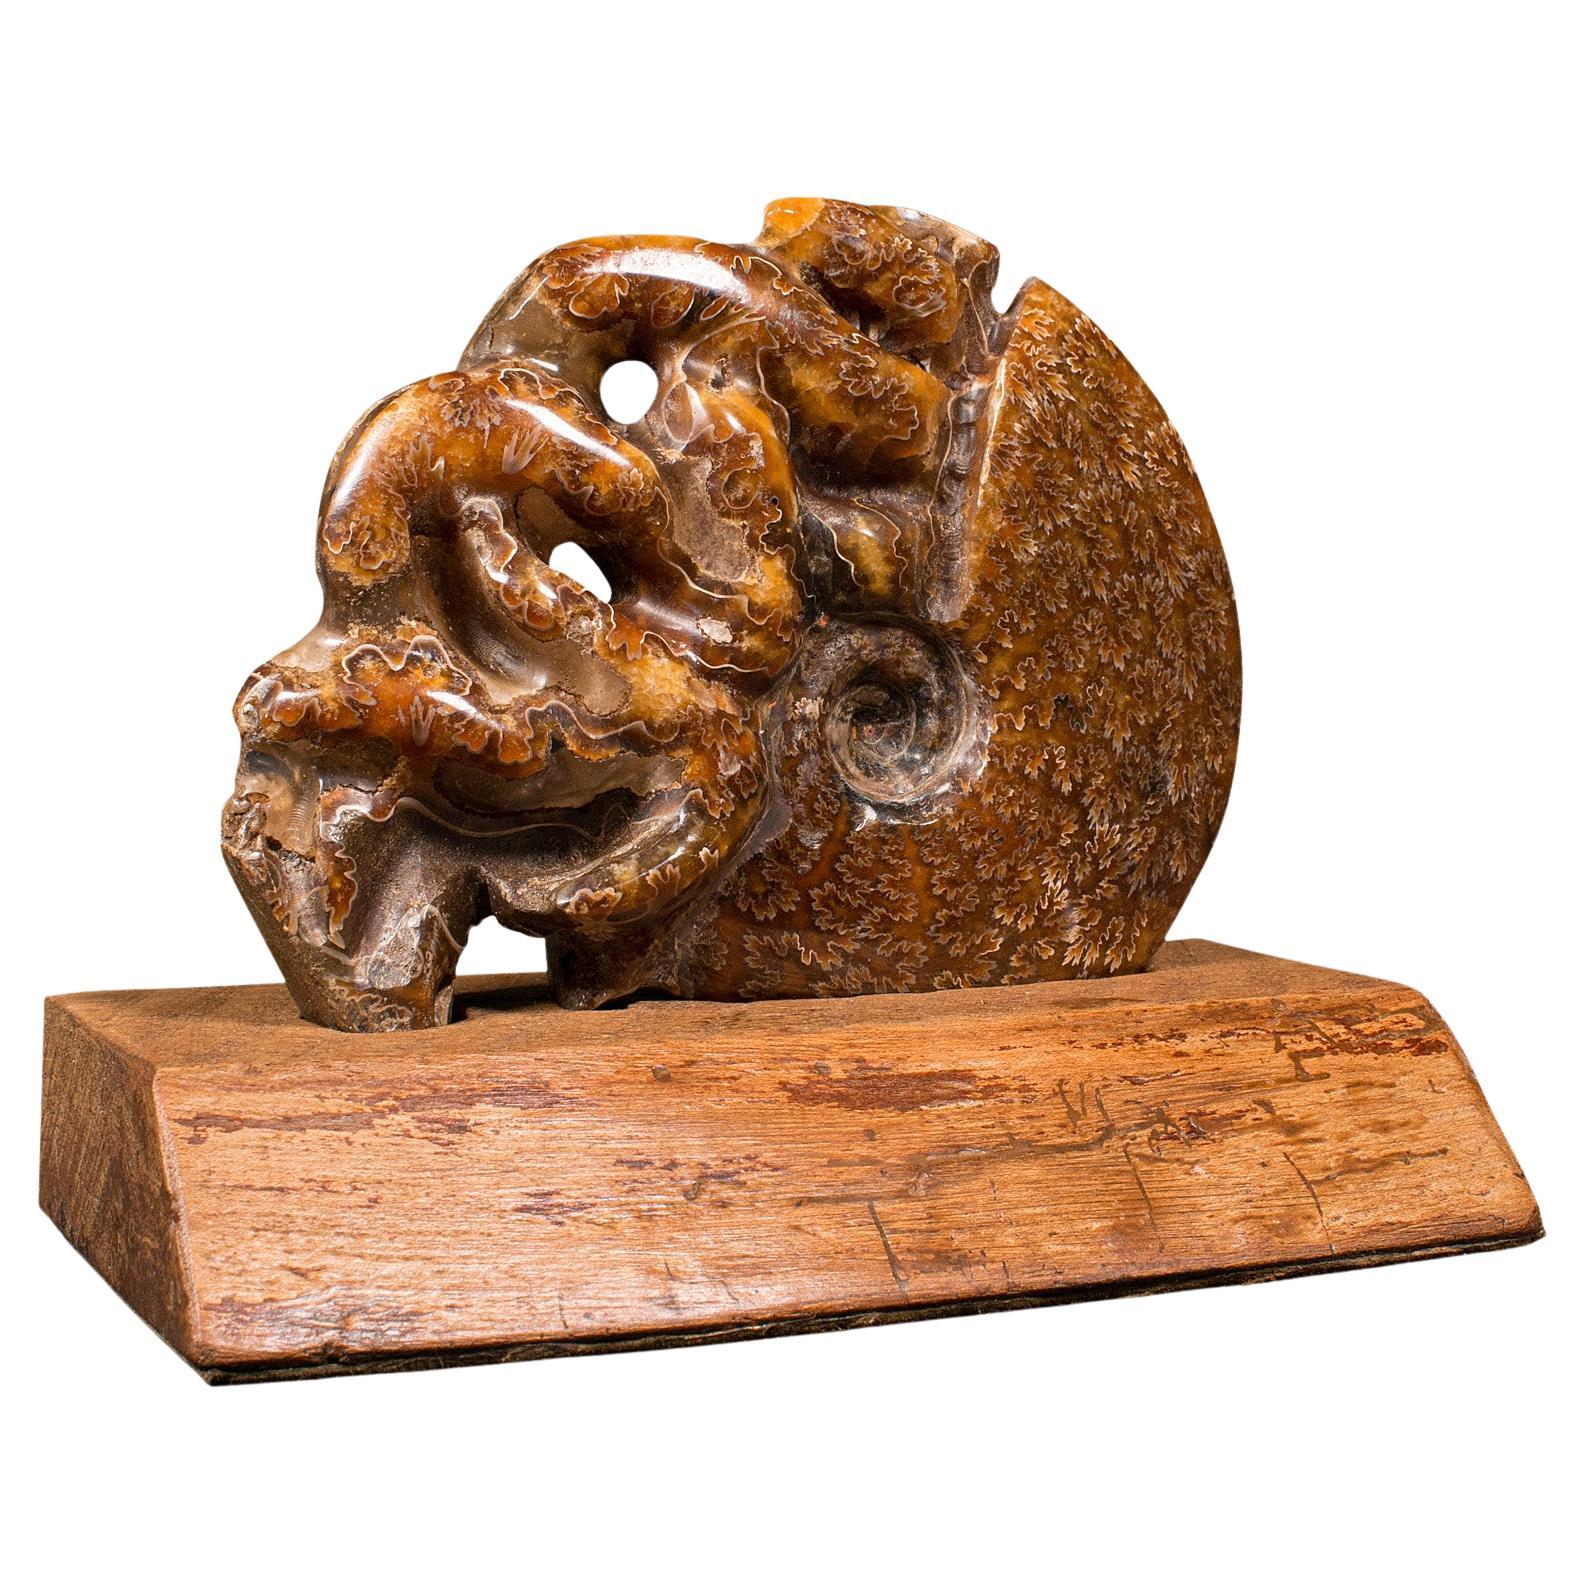 Geschnitztes dekoratives Ammonit-Deko-Objekt, afrikanisch, versteinert, ausgestellt, kretatisch, um 1970